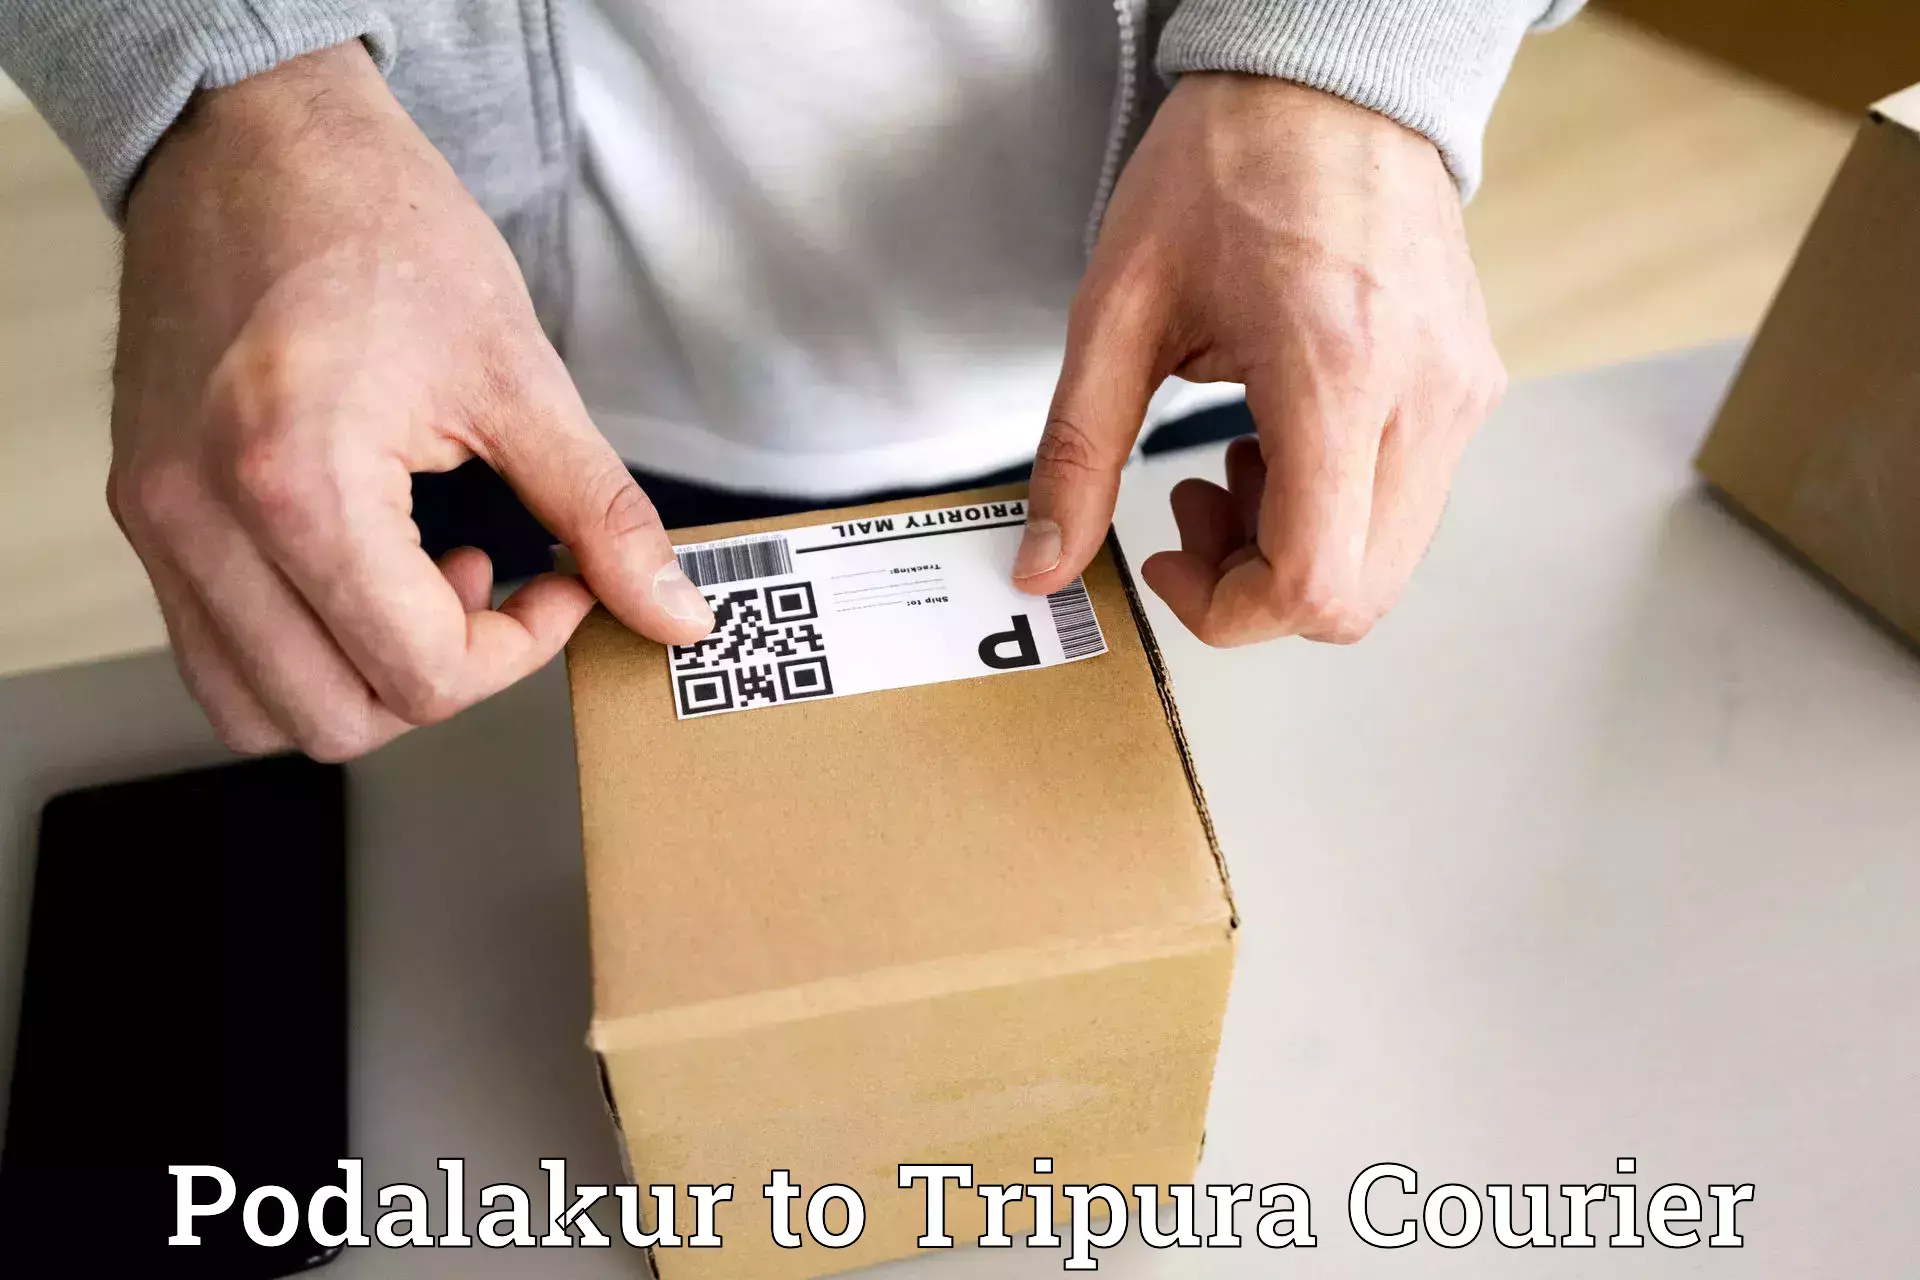 User-friendly courier app Podalakur to Radhakishorepur